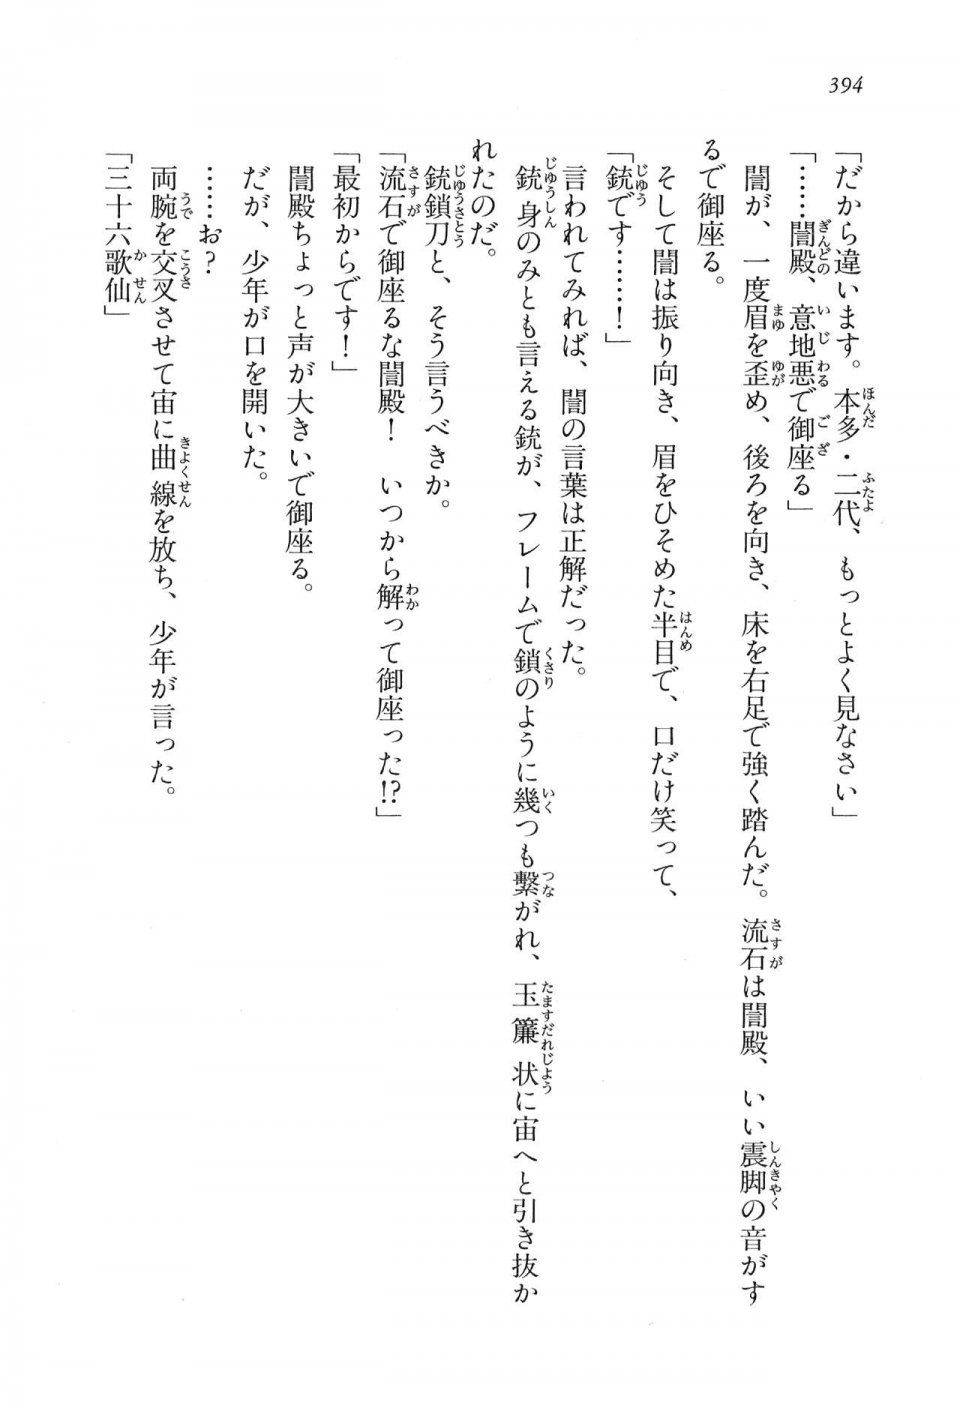 Kyoukai Senjou no Horizon LN Vol 16(7A) - Photo #394